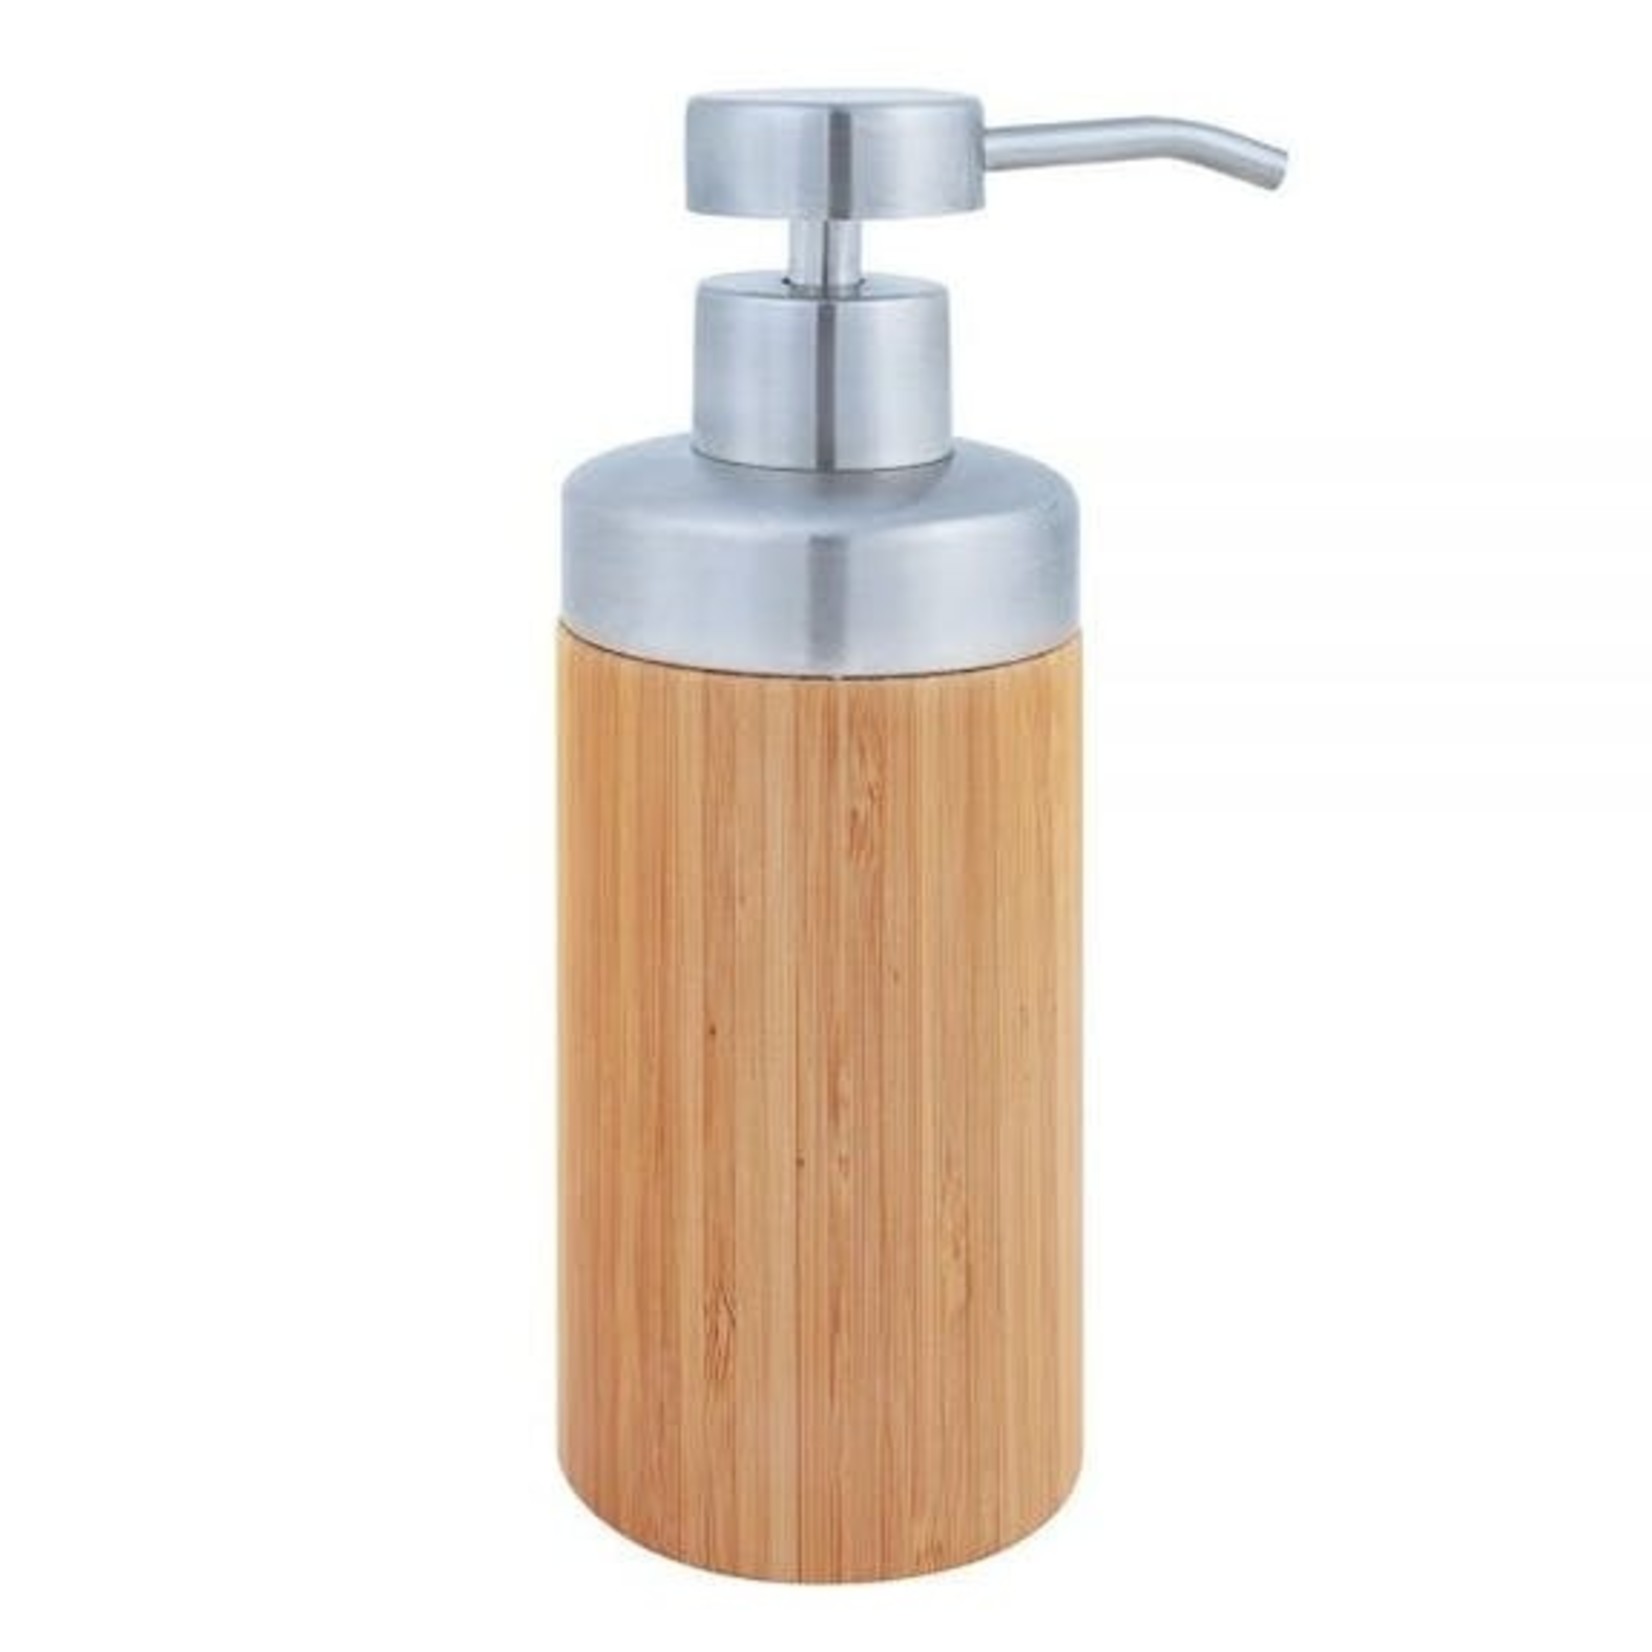 Croll & Denecke Distributeur de savon en bambou.